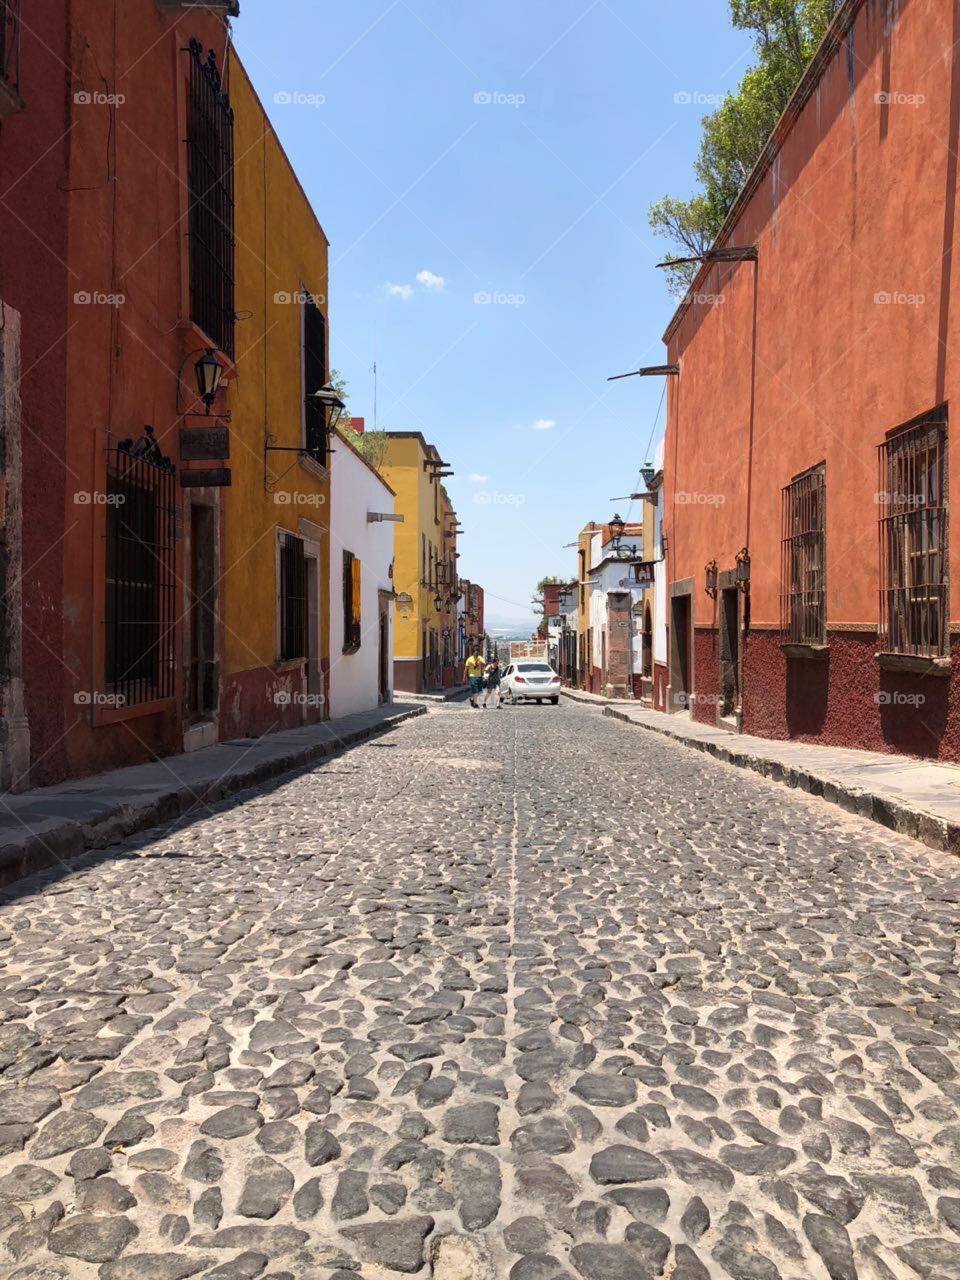 The streets of San Miguel De Allende Mexico